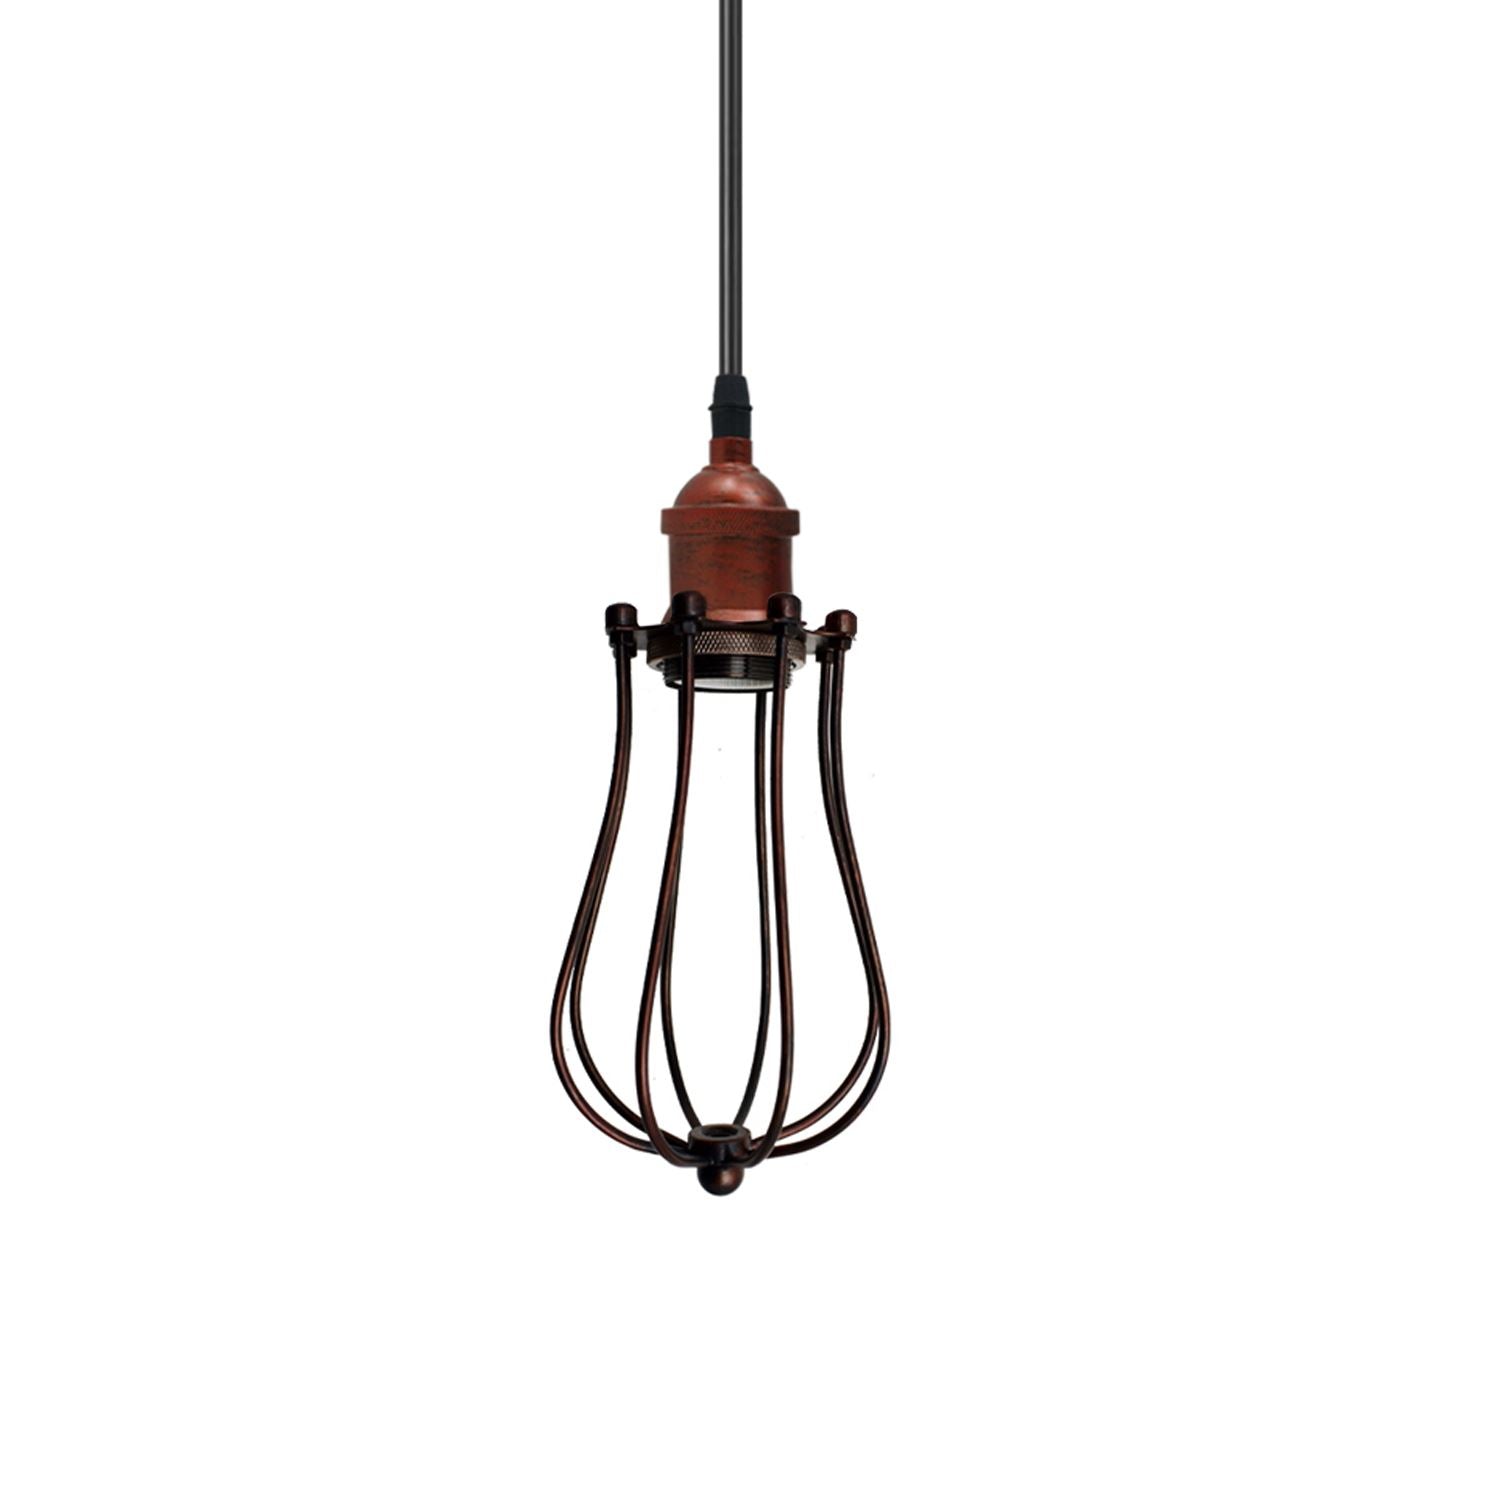 Ceiling Rose Balloon Cage Hanging Pendant Lamp Holder Light Fitting Lighting Kit UK~1193 - LEDSone UK Ltd